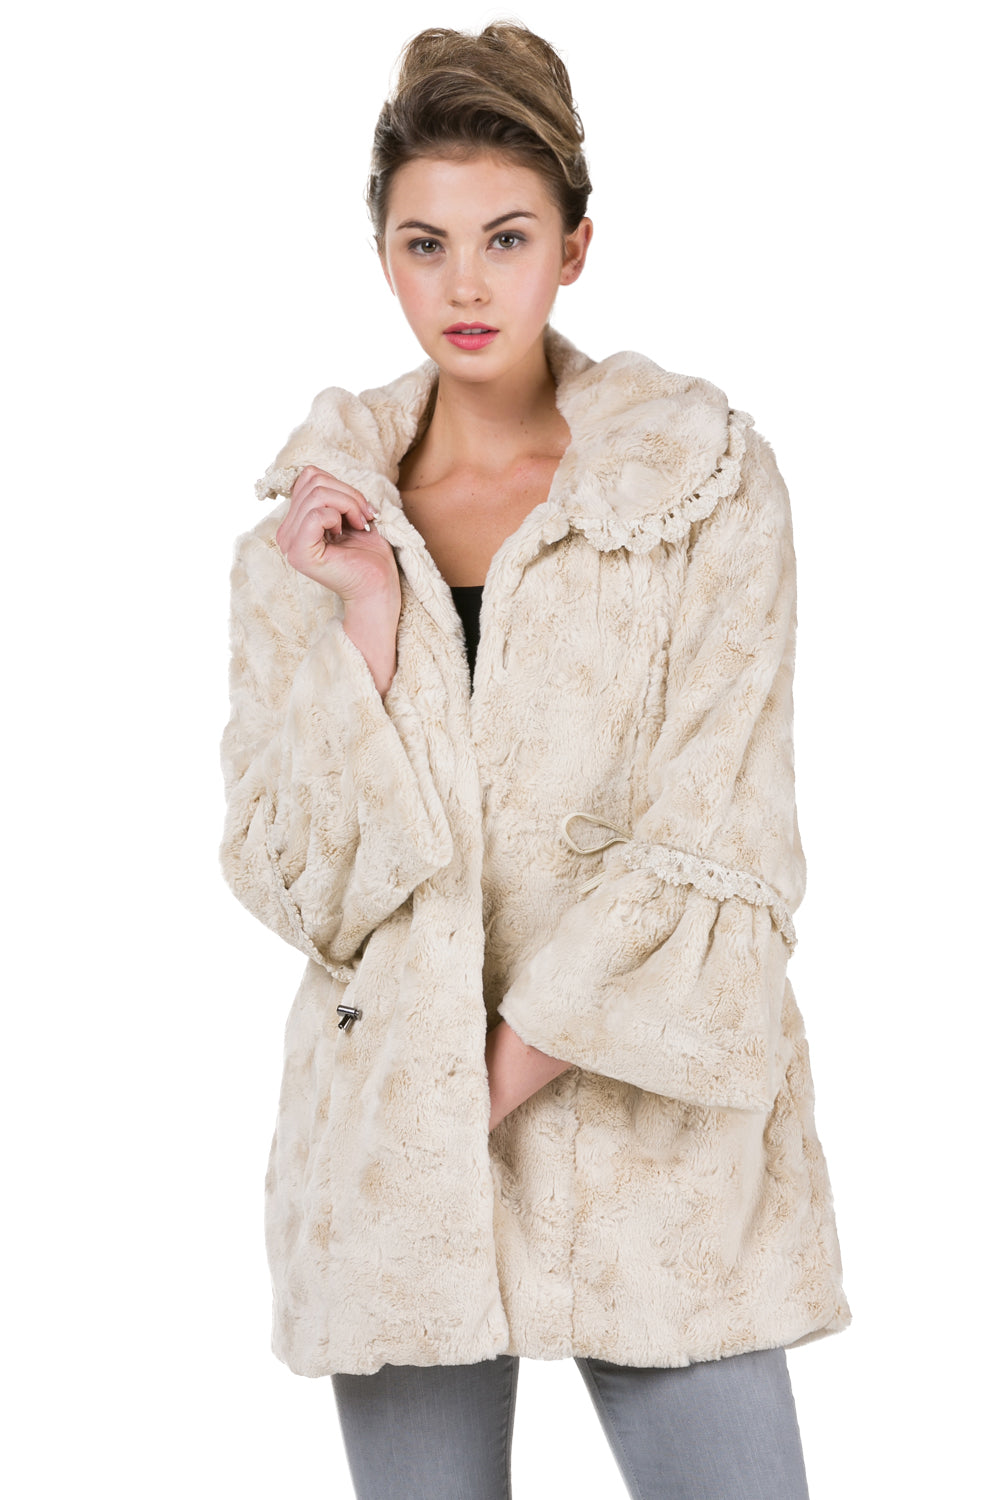 Women's Faux Fur Jacket Coat with Lace Trim - Shop Lev